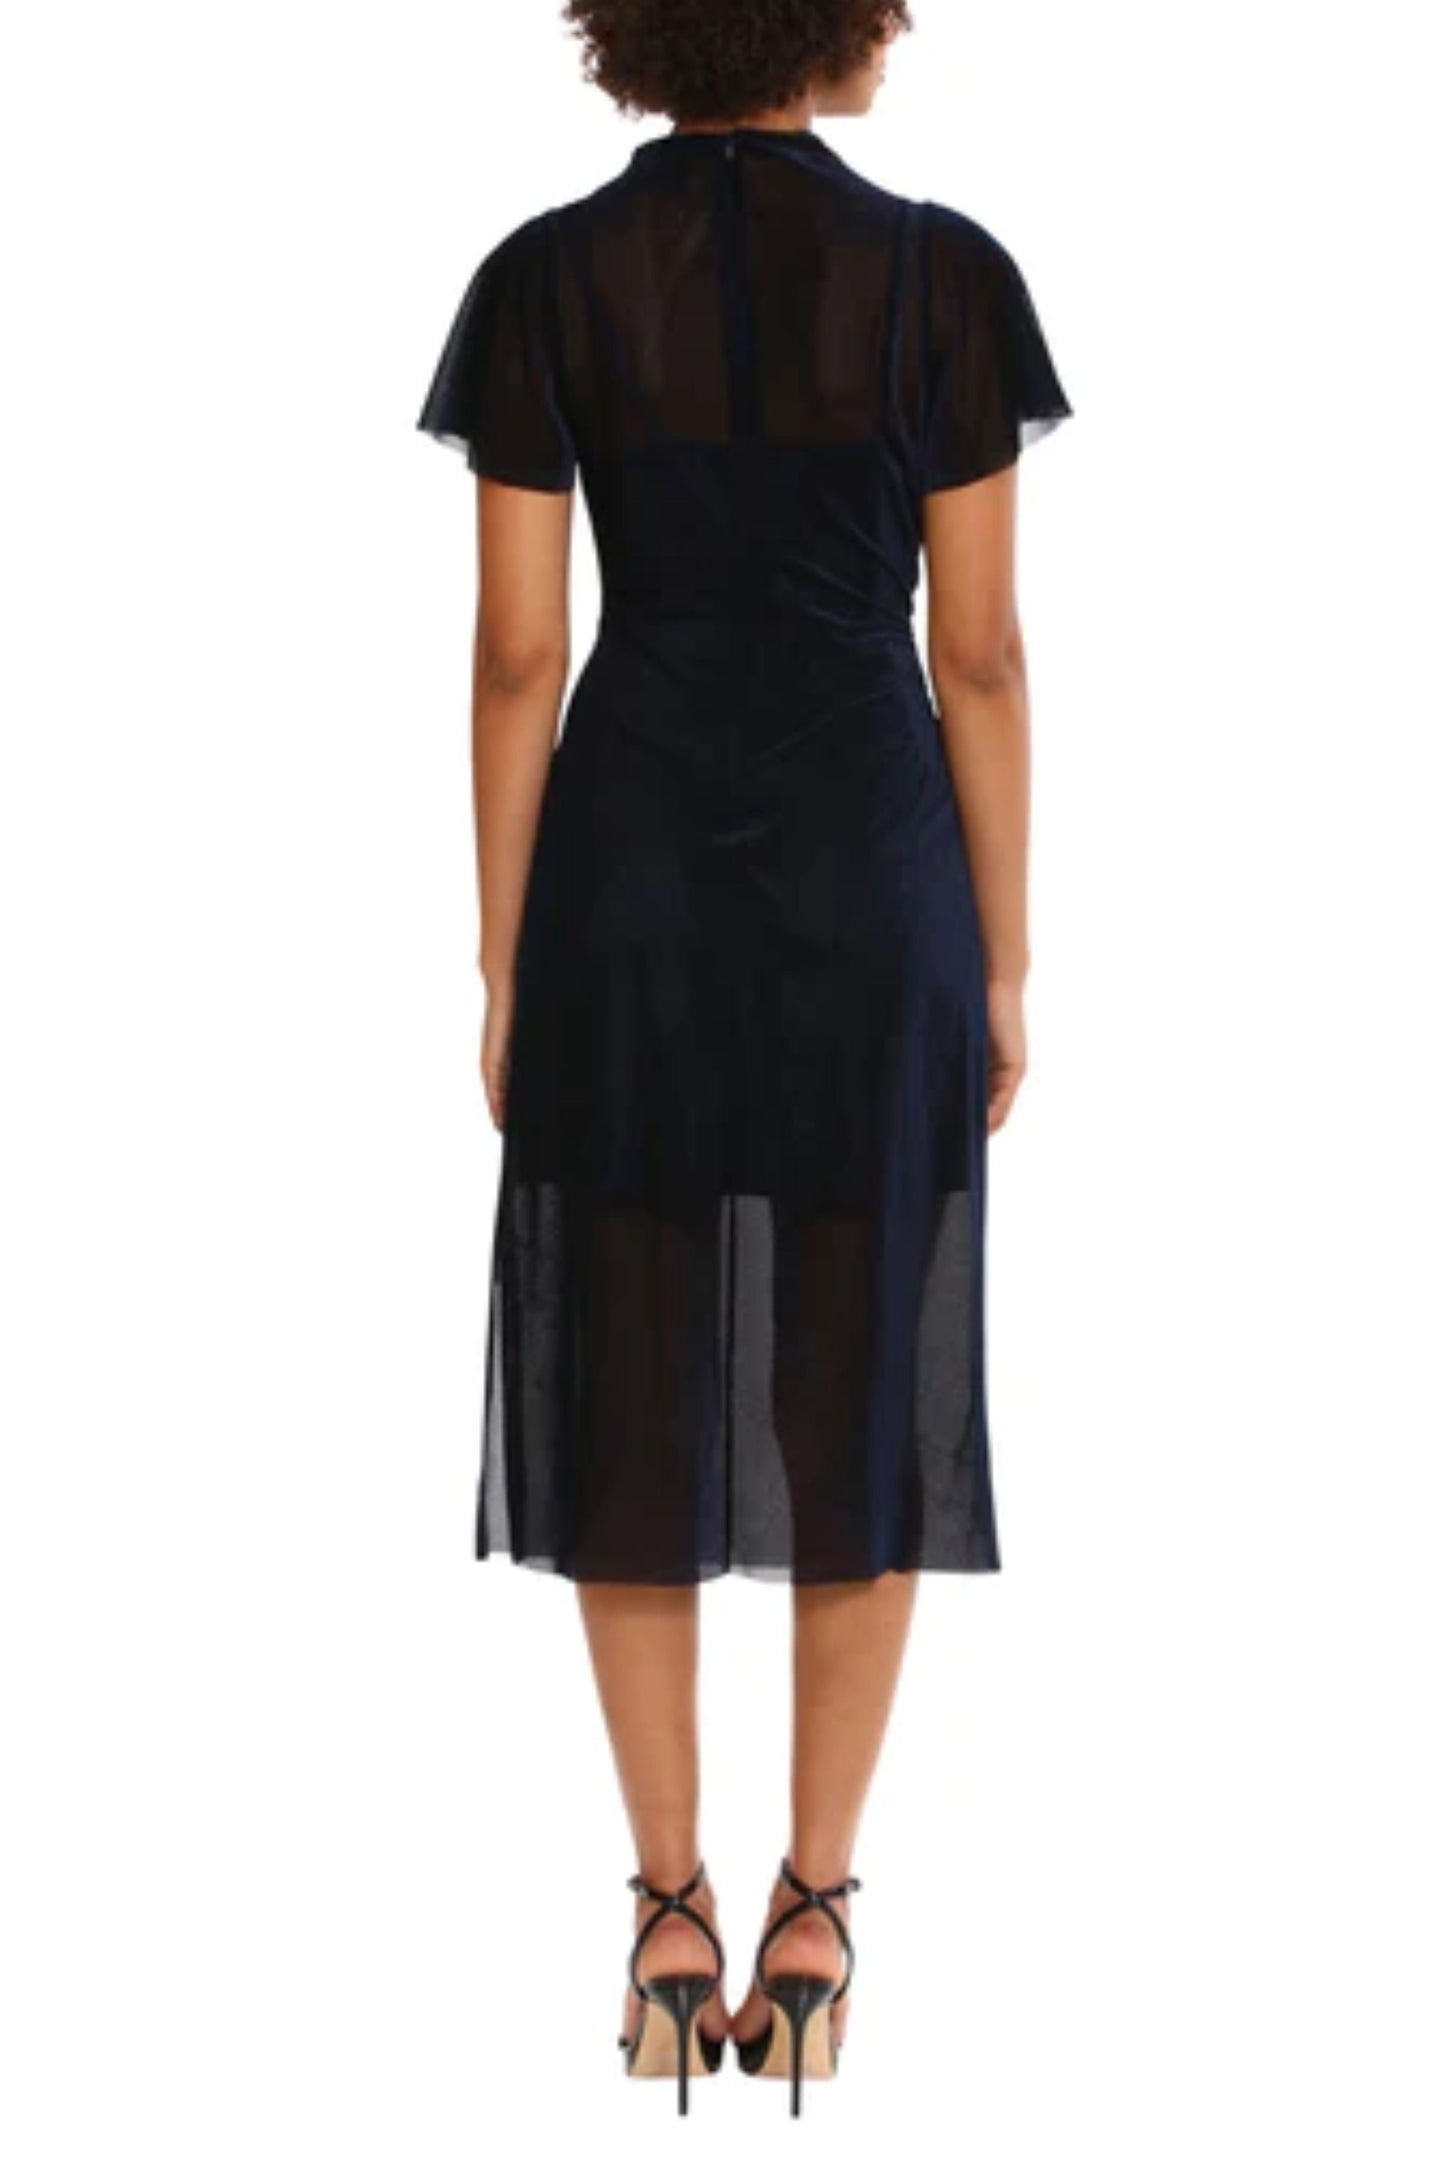 Donna Morgan Short Sleeve Illusion Neckline Dress